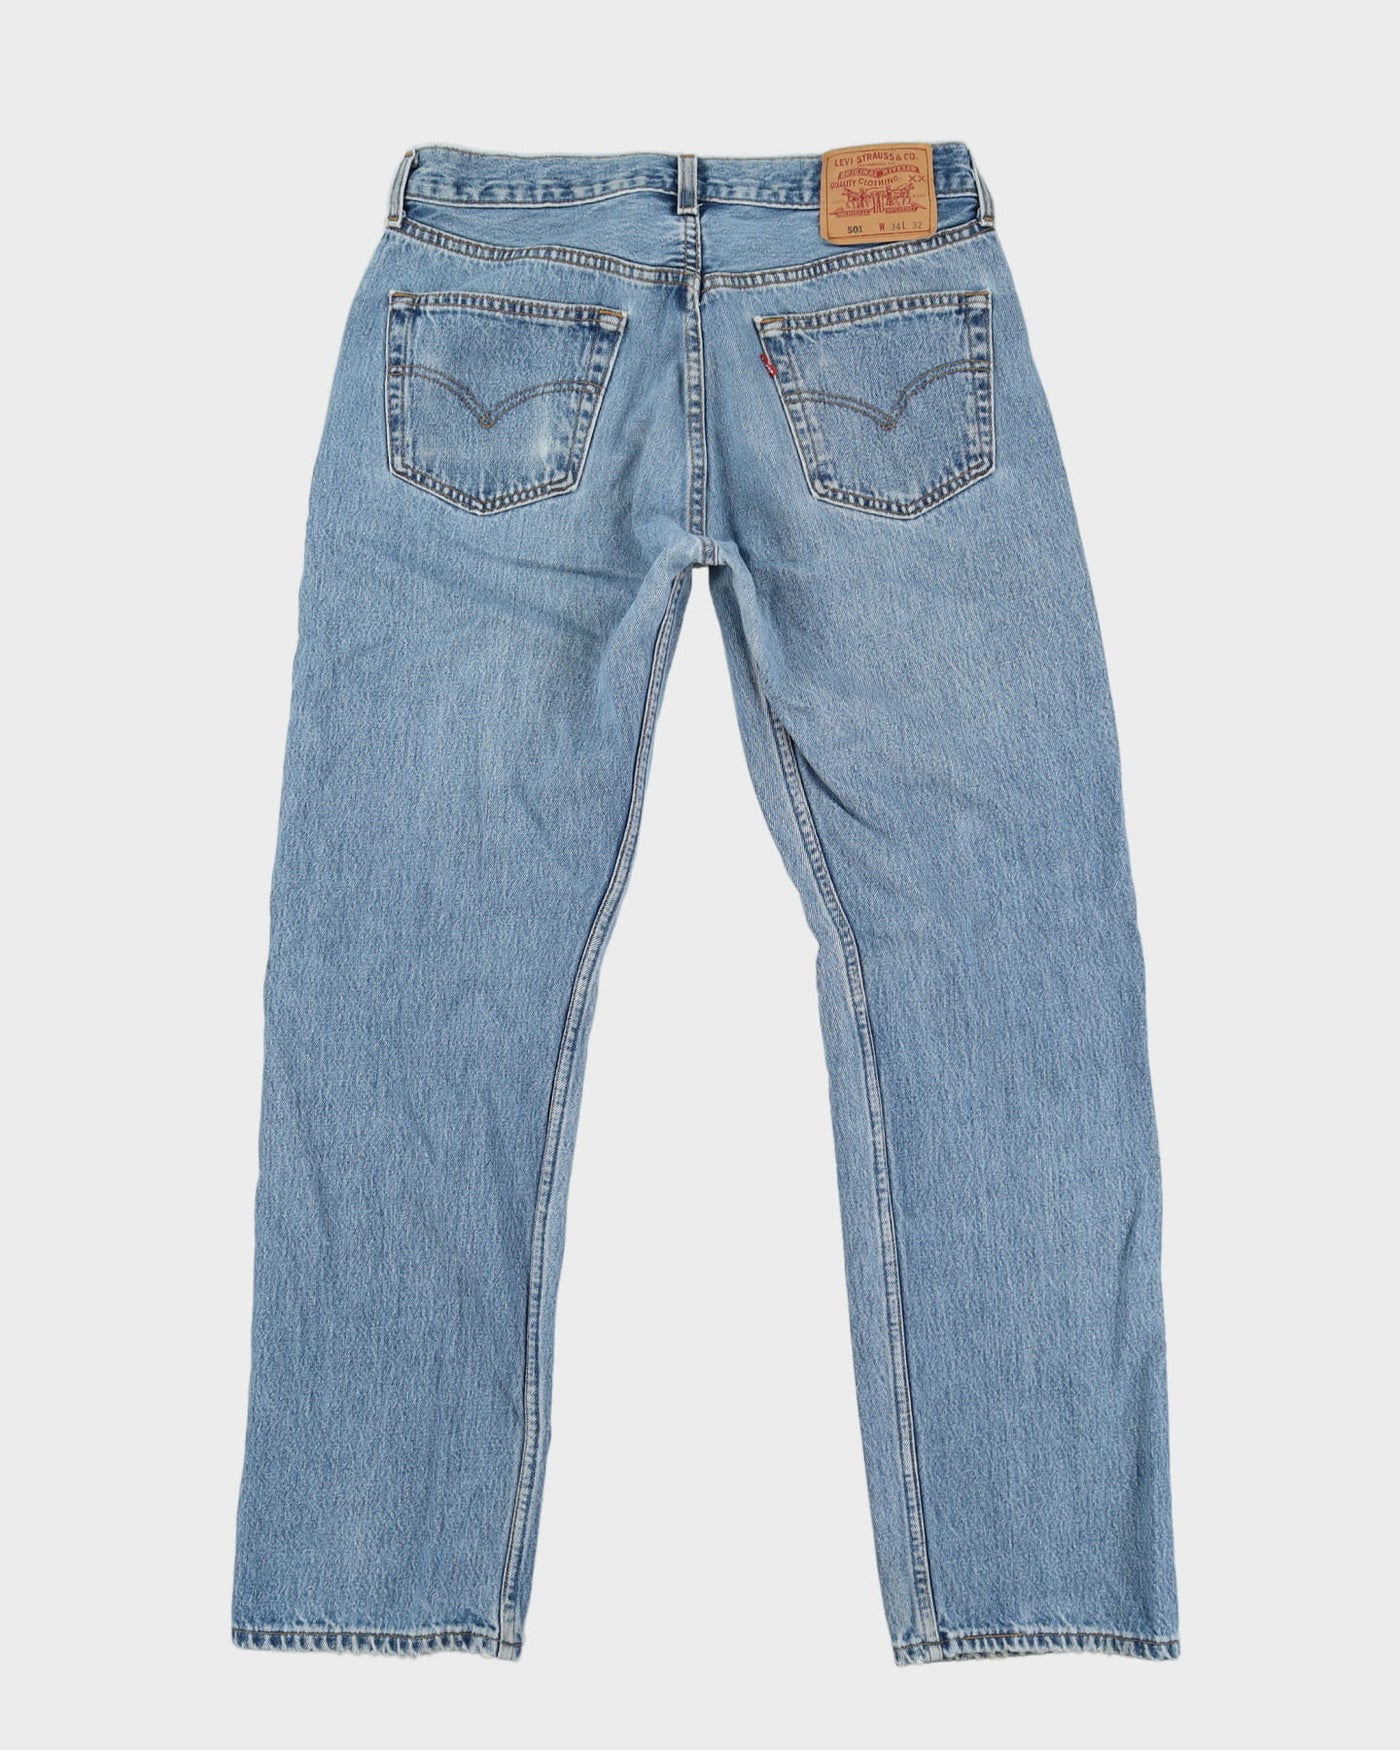 Vintage 90s Levi's 501 Blue Light Wash Jeans - W32 L31